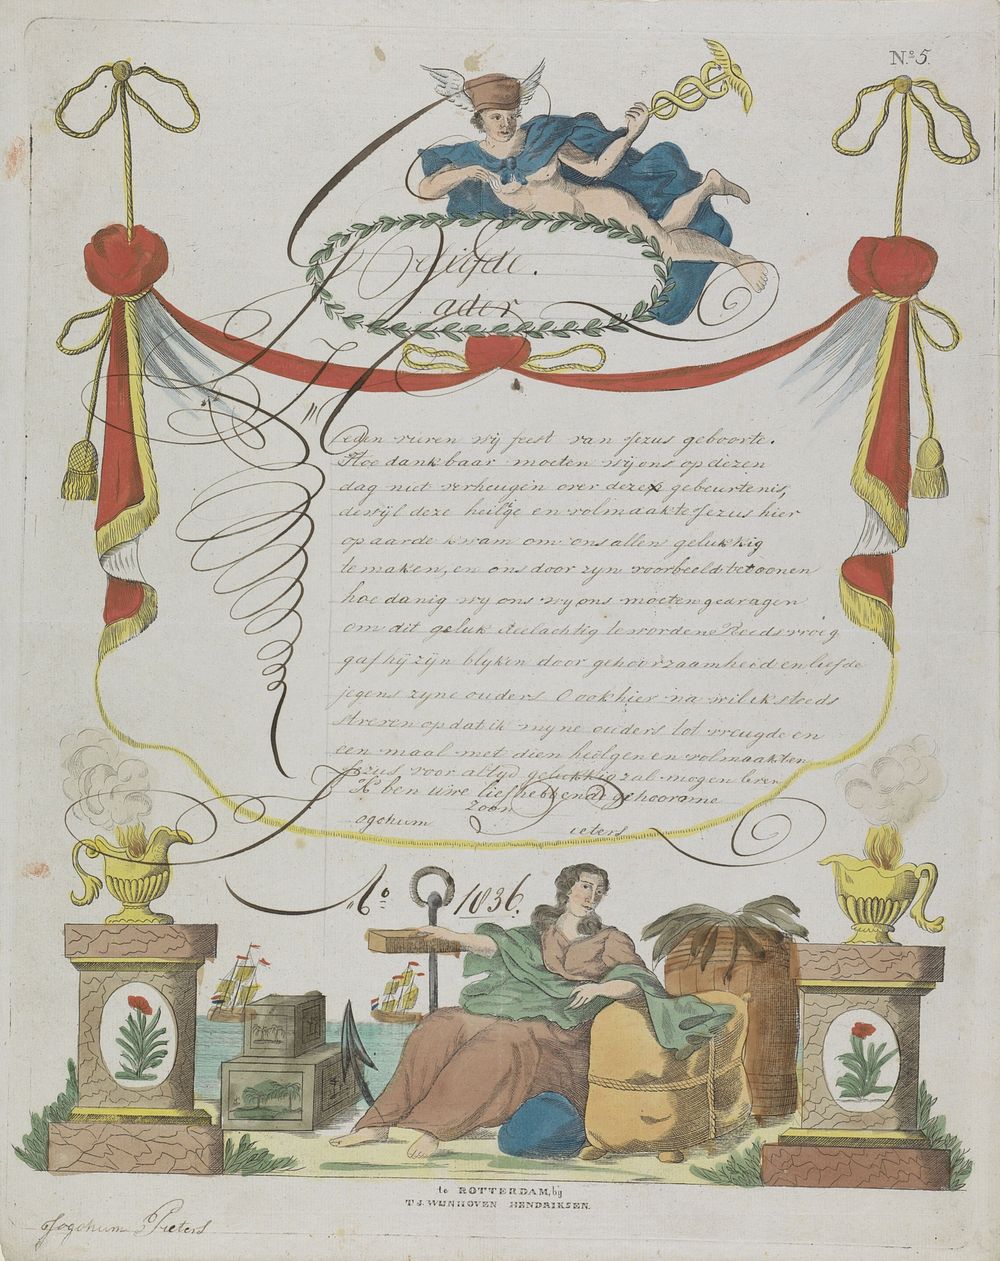 Wensbrief met Mercurius en Hoop (1836) by Theodorus Johannes Wijnhoven Hendriksen and anonymous